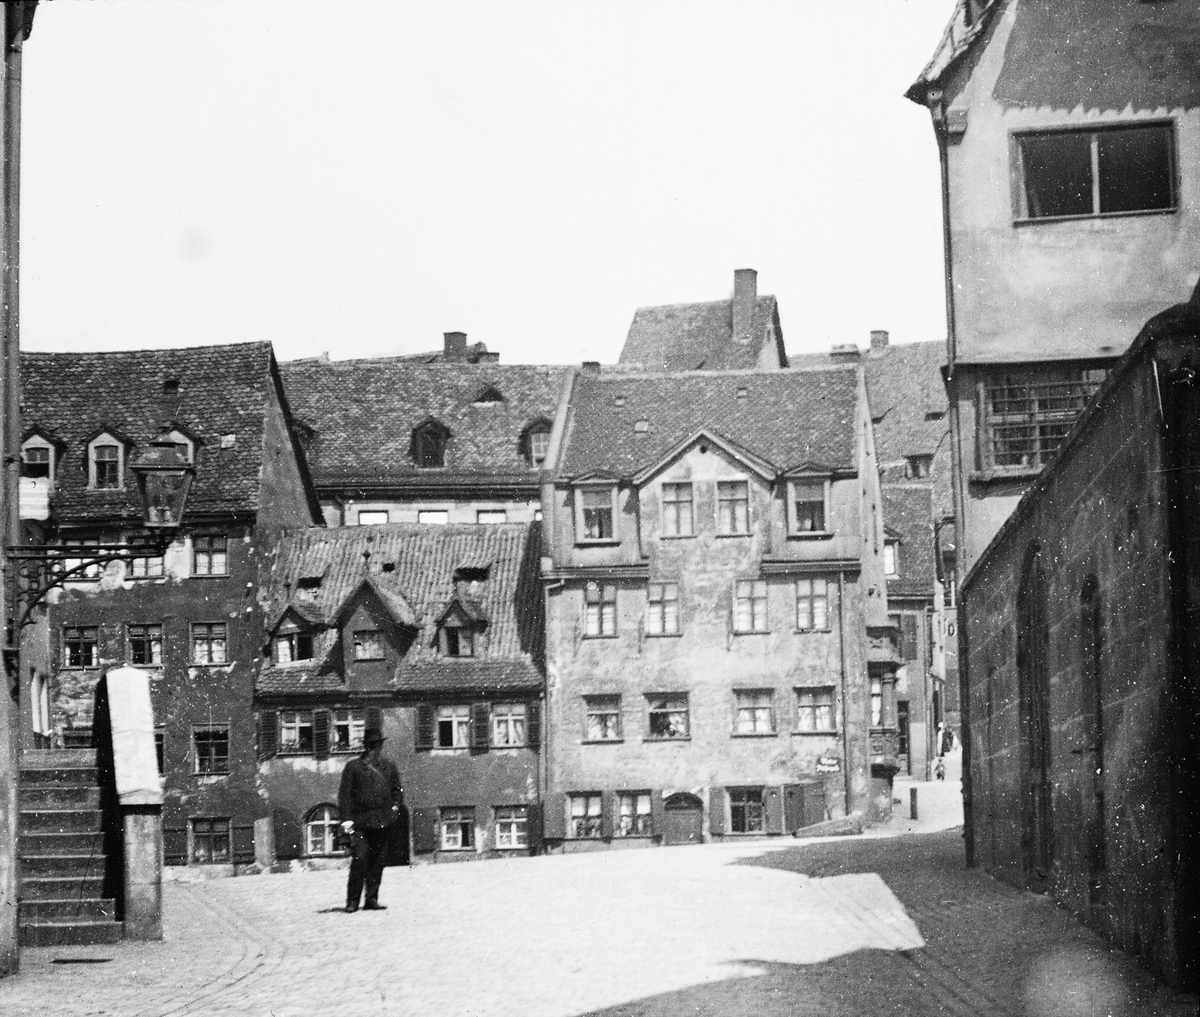 Skioptikonbild med motiv av man på gata i Nürnberg.
Bilden har förvarats i kartong märkt: Nürnberg 1901. VIII.
Bilden är eventuellt tagen vid Hübnersplatz och Vordere Fischergasse med utsikt mot norr.